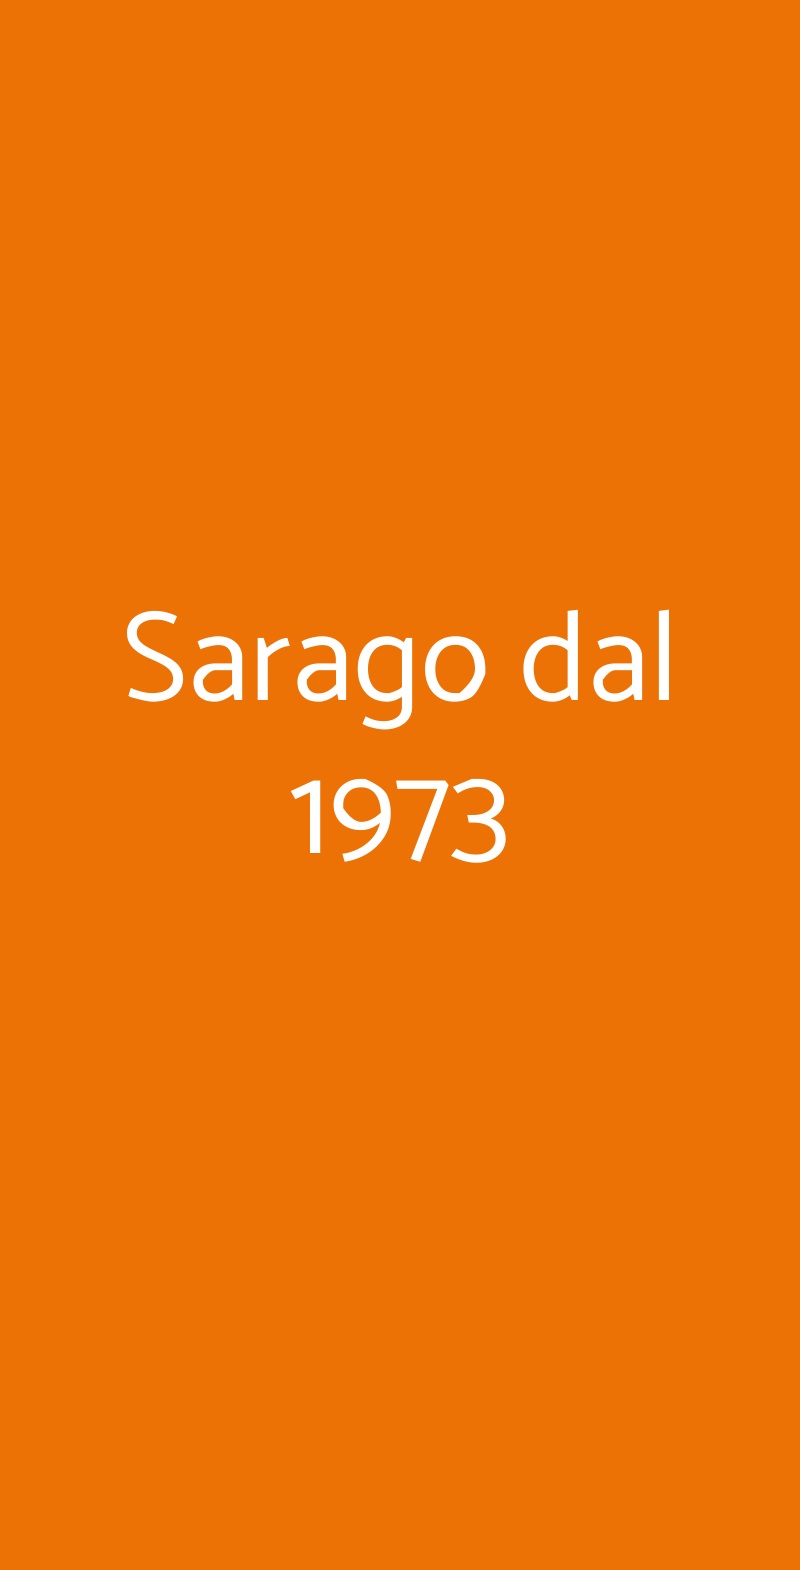 Sarago dal 1973 Napoli menù 1 pagina